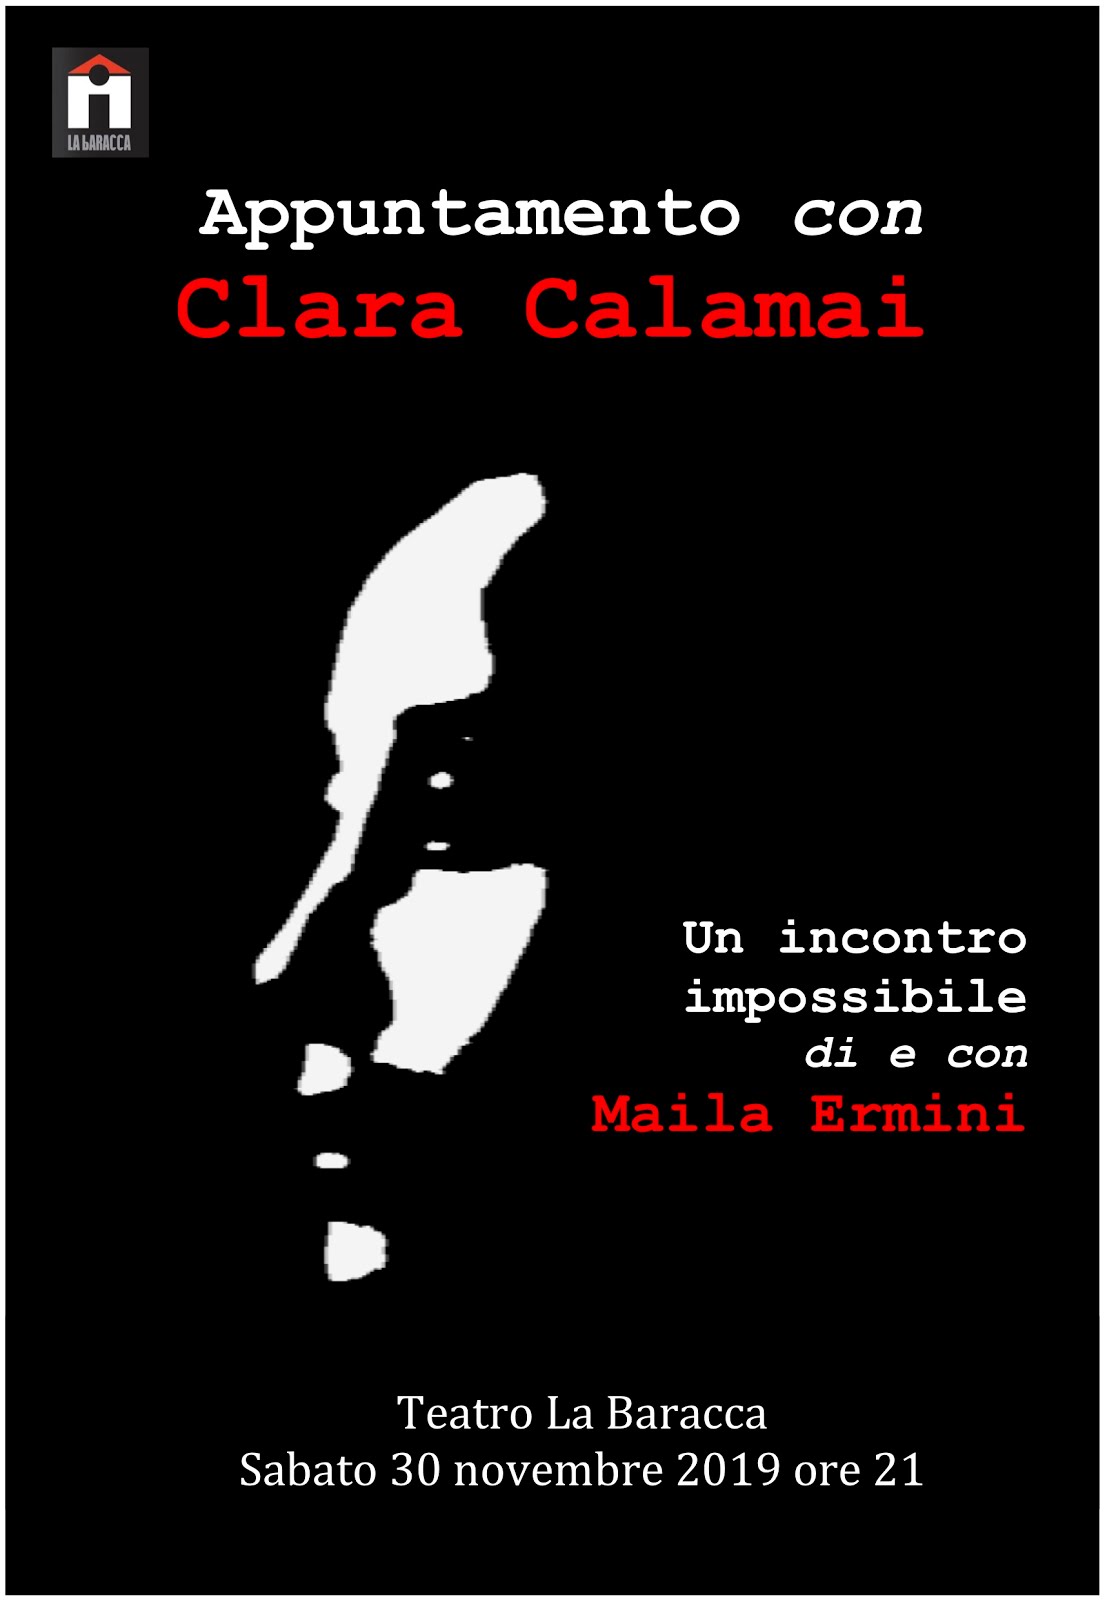 Appuntamento con Clara Calamai